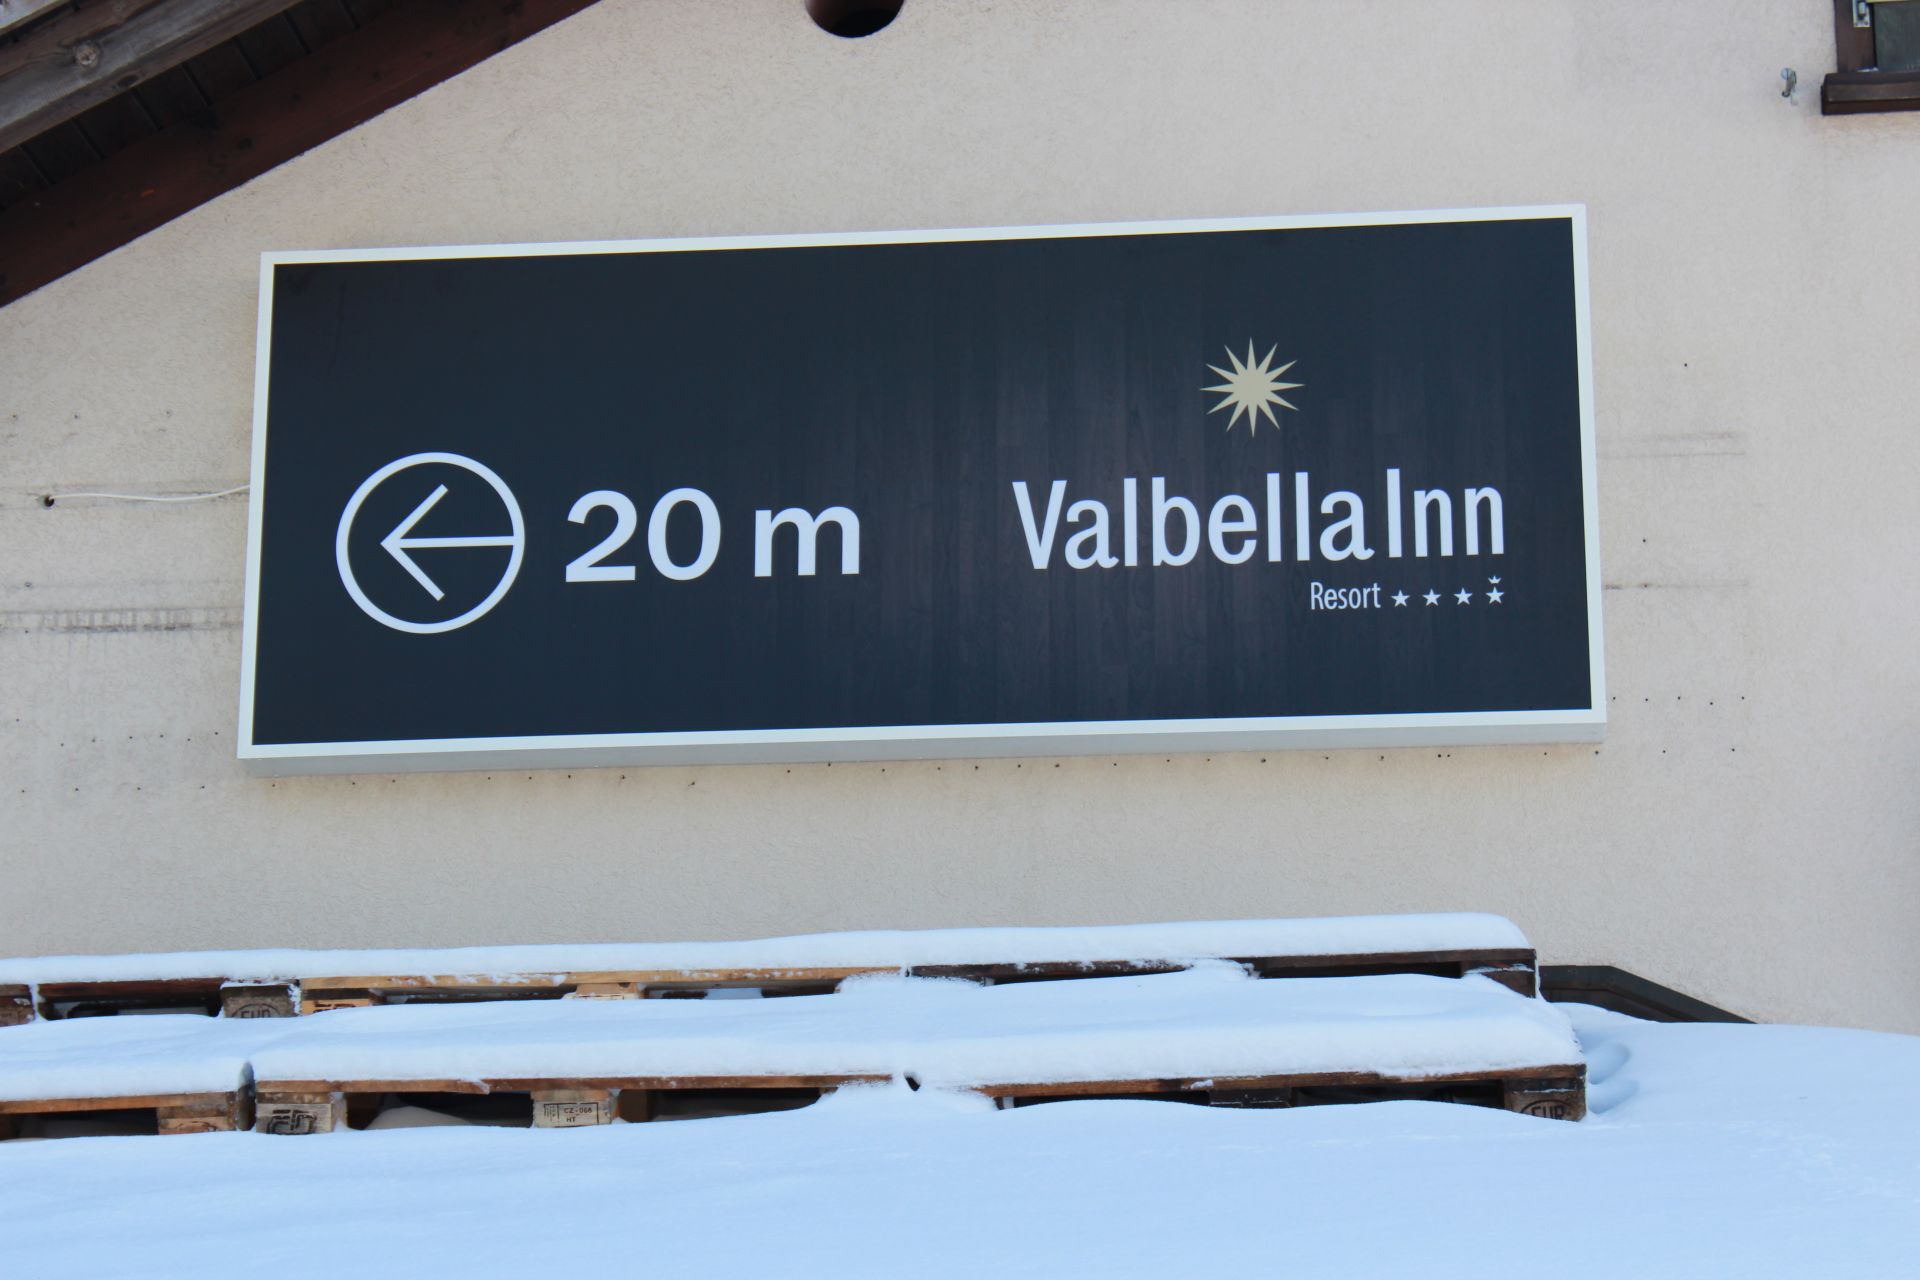 Hotel Valbella Inn<br>Valbella<br>November 2013